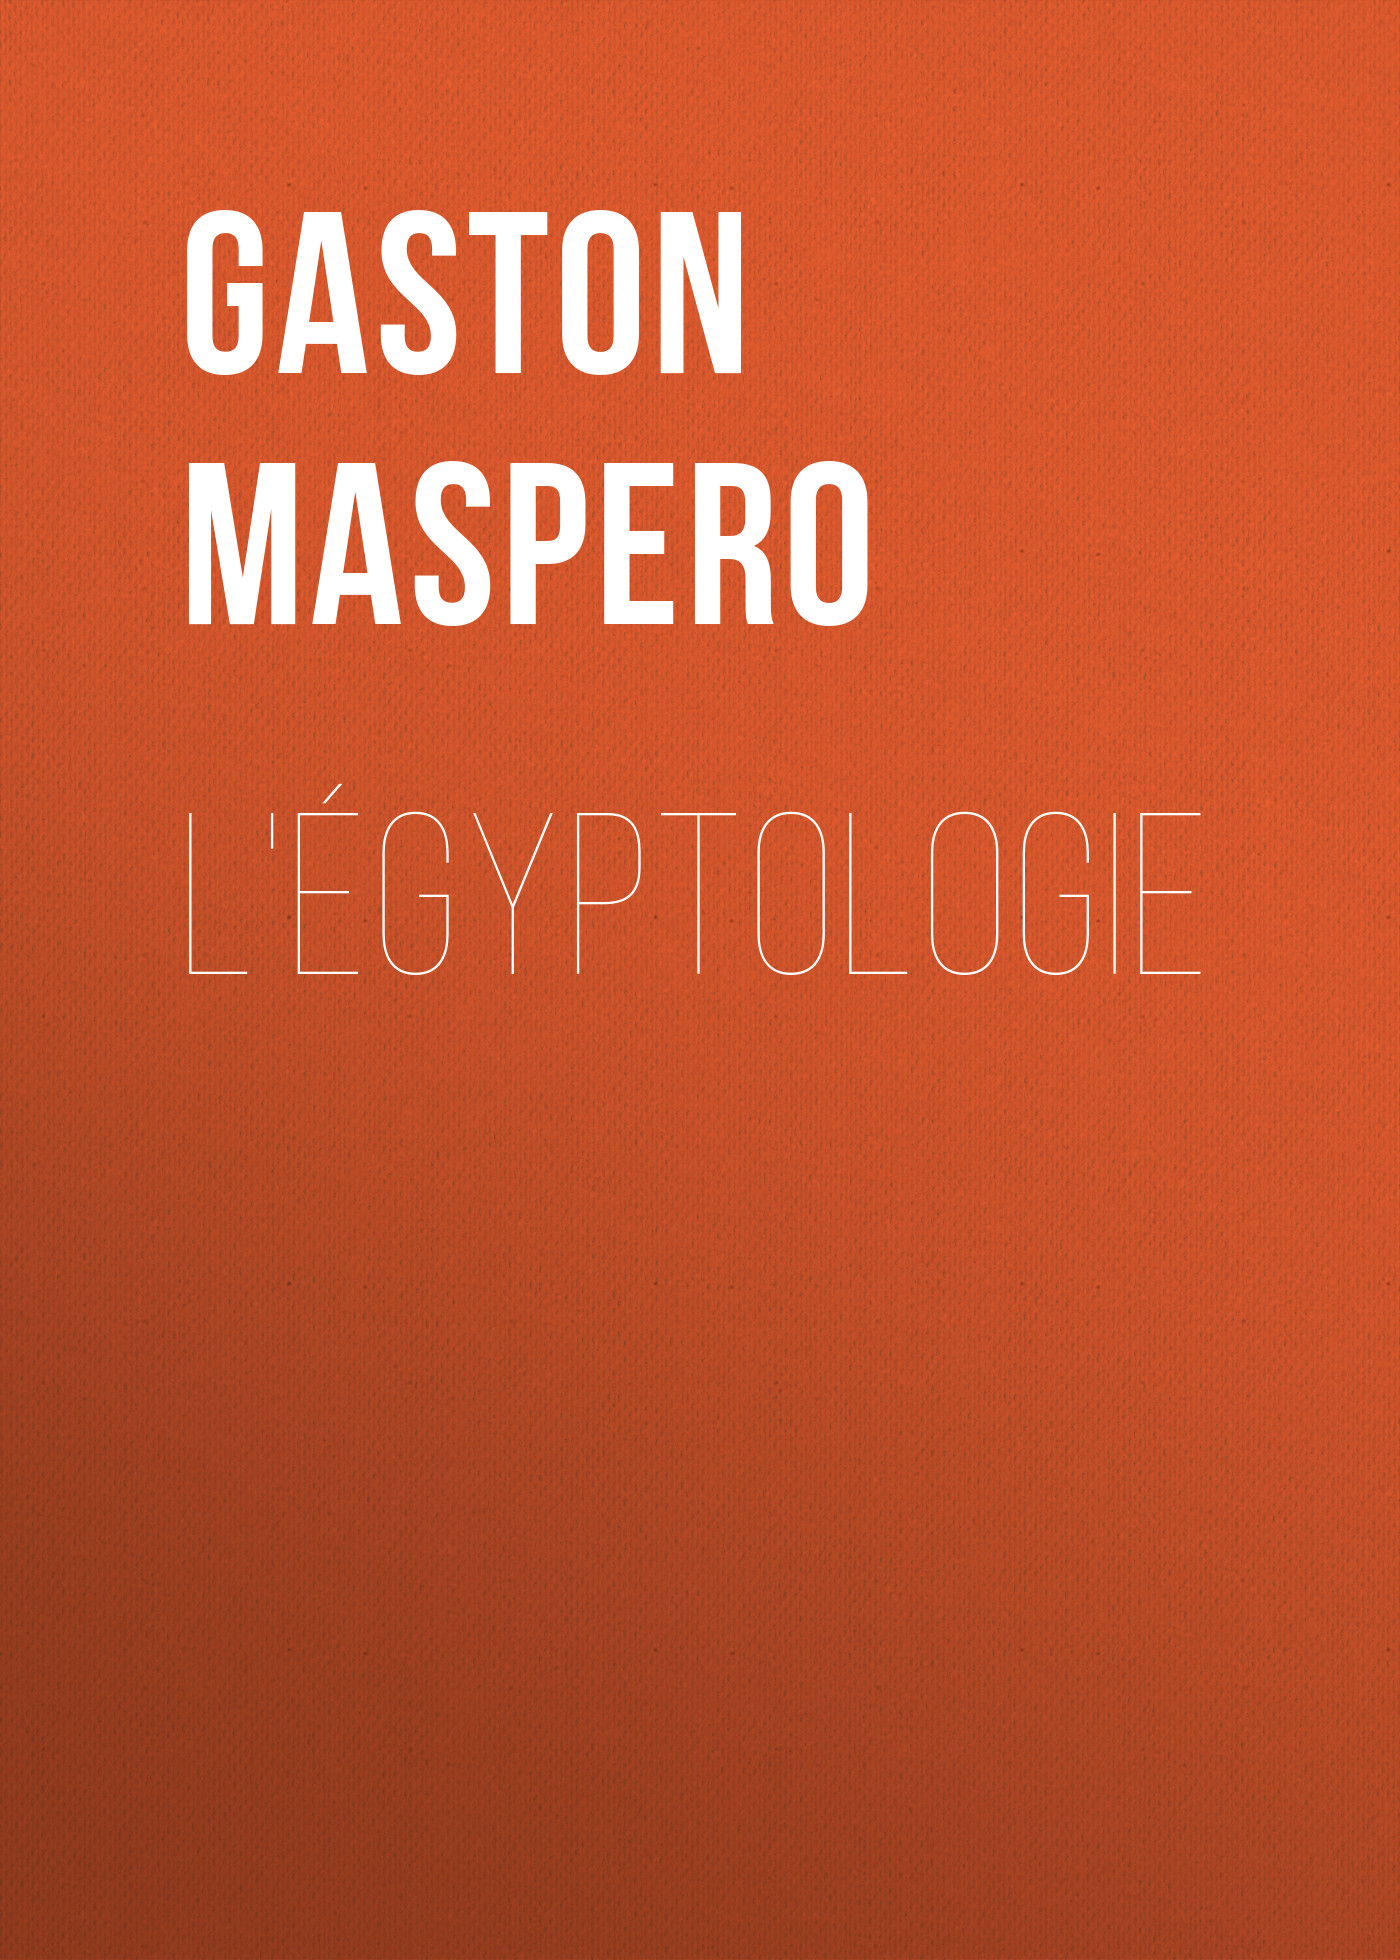 Книга L'égyptologie из серии , созданная Gaston Maspero, может относится к жанру Зарубежная старинная литература, Зарубежная прикладная и научно-популярная литература, Изобразительное искусство, фотография. Стоимость электронной книги L'égyptologie с идентификатором 36366734 составляет 0 руб.